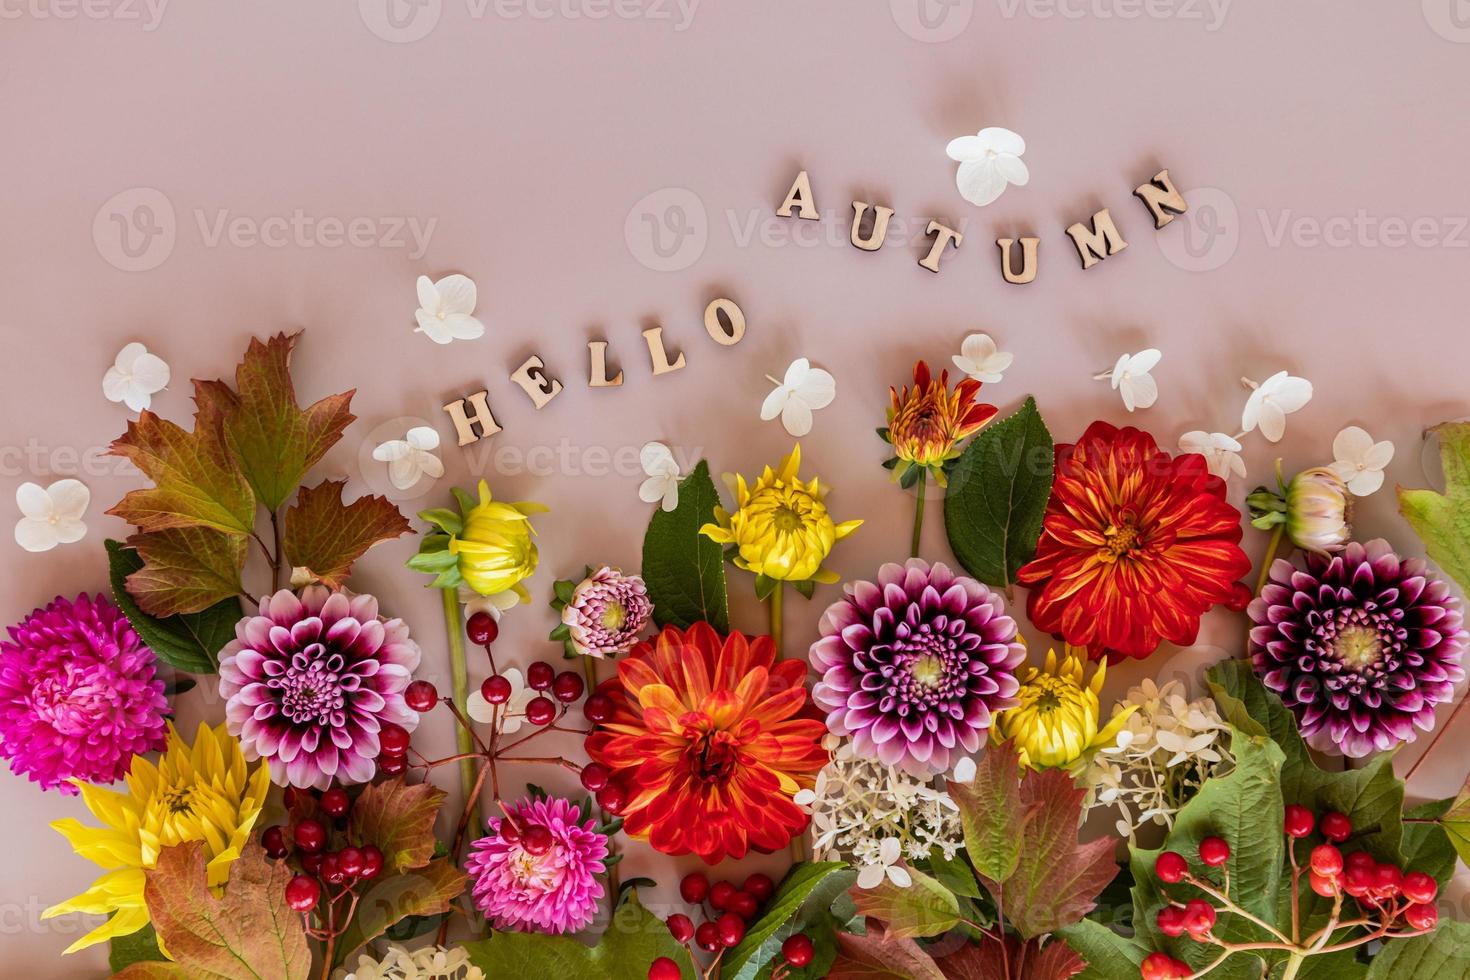 eine festliche karte, tapete, ein herbsthintergrund aus bunten schnittgartenblumen. Blumenkonzept. text aus holzbuchstaben - hallo herbst. foto